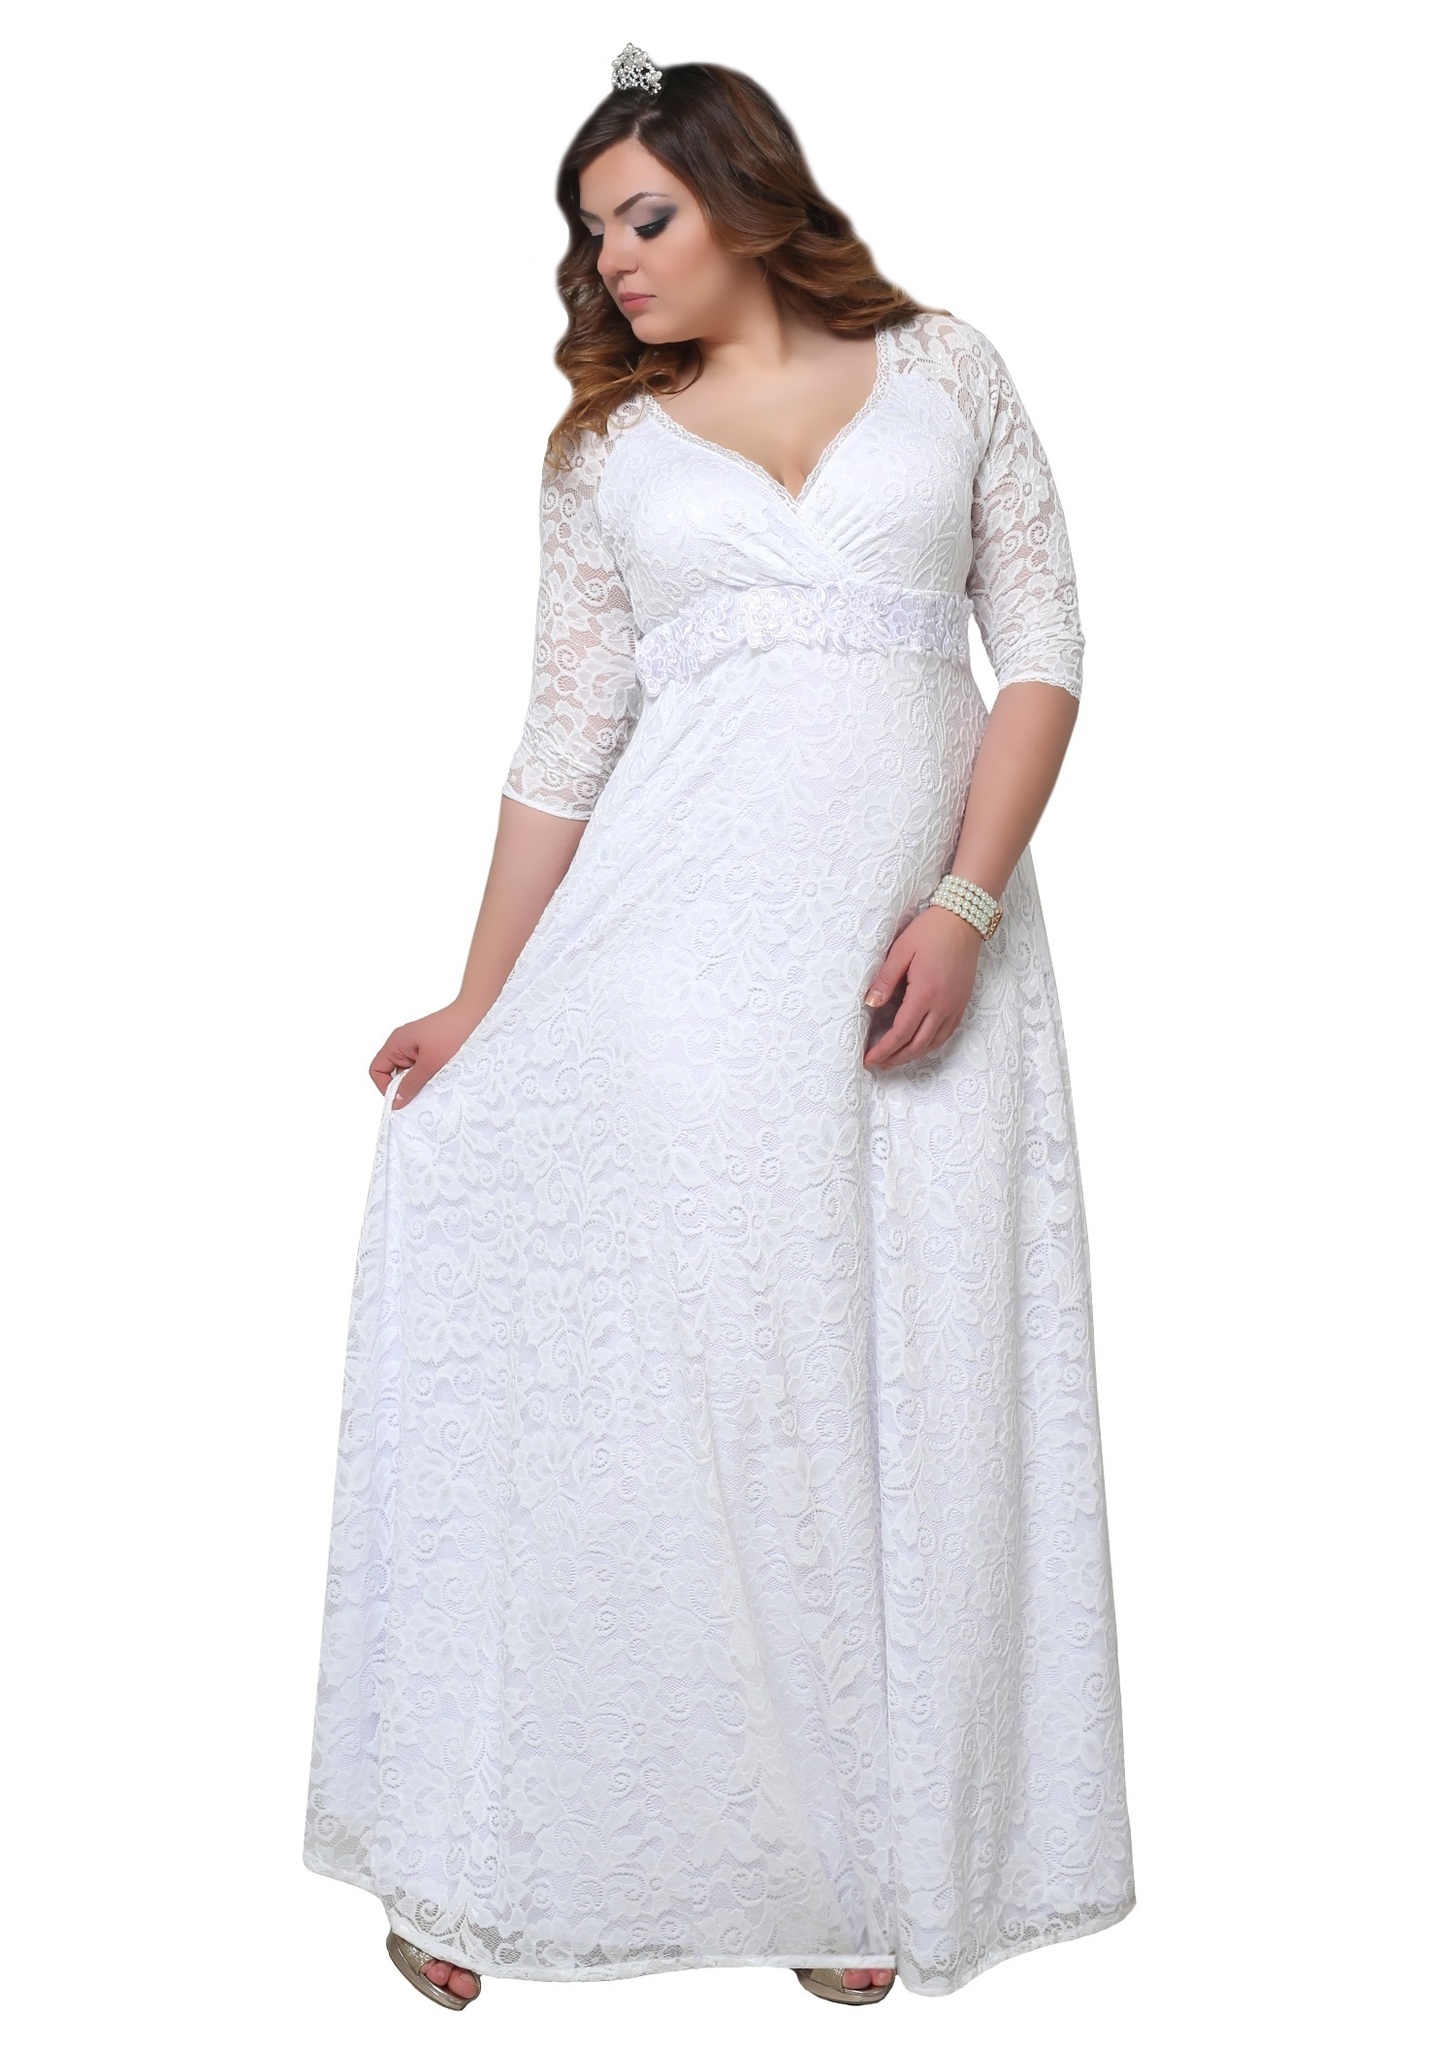 Белые платья больших размеров. Свадебные платья для полных. Белое вечернее платье большого размера. Белые вечерние платья больших размеров. Венчальное платье больших размеров.